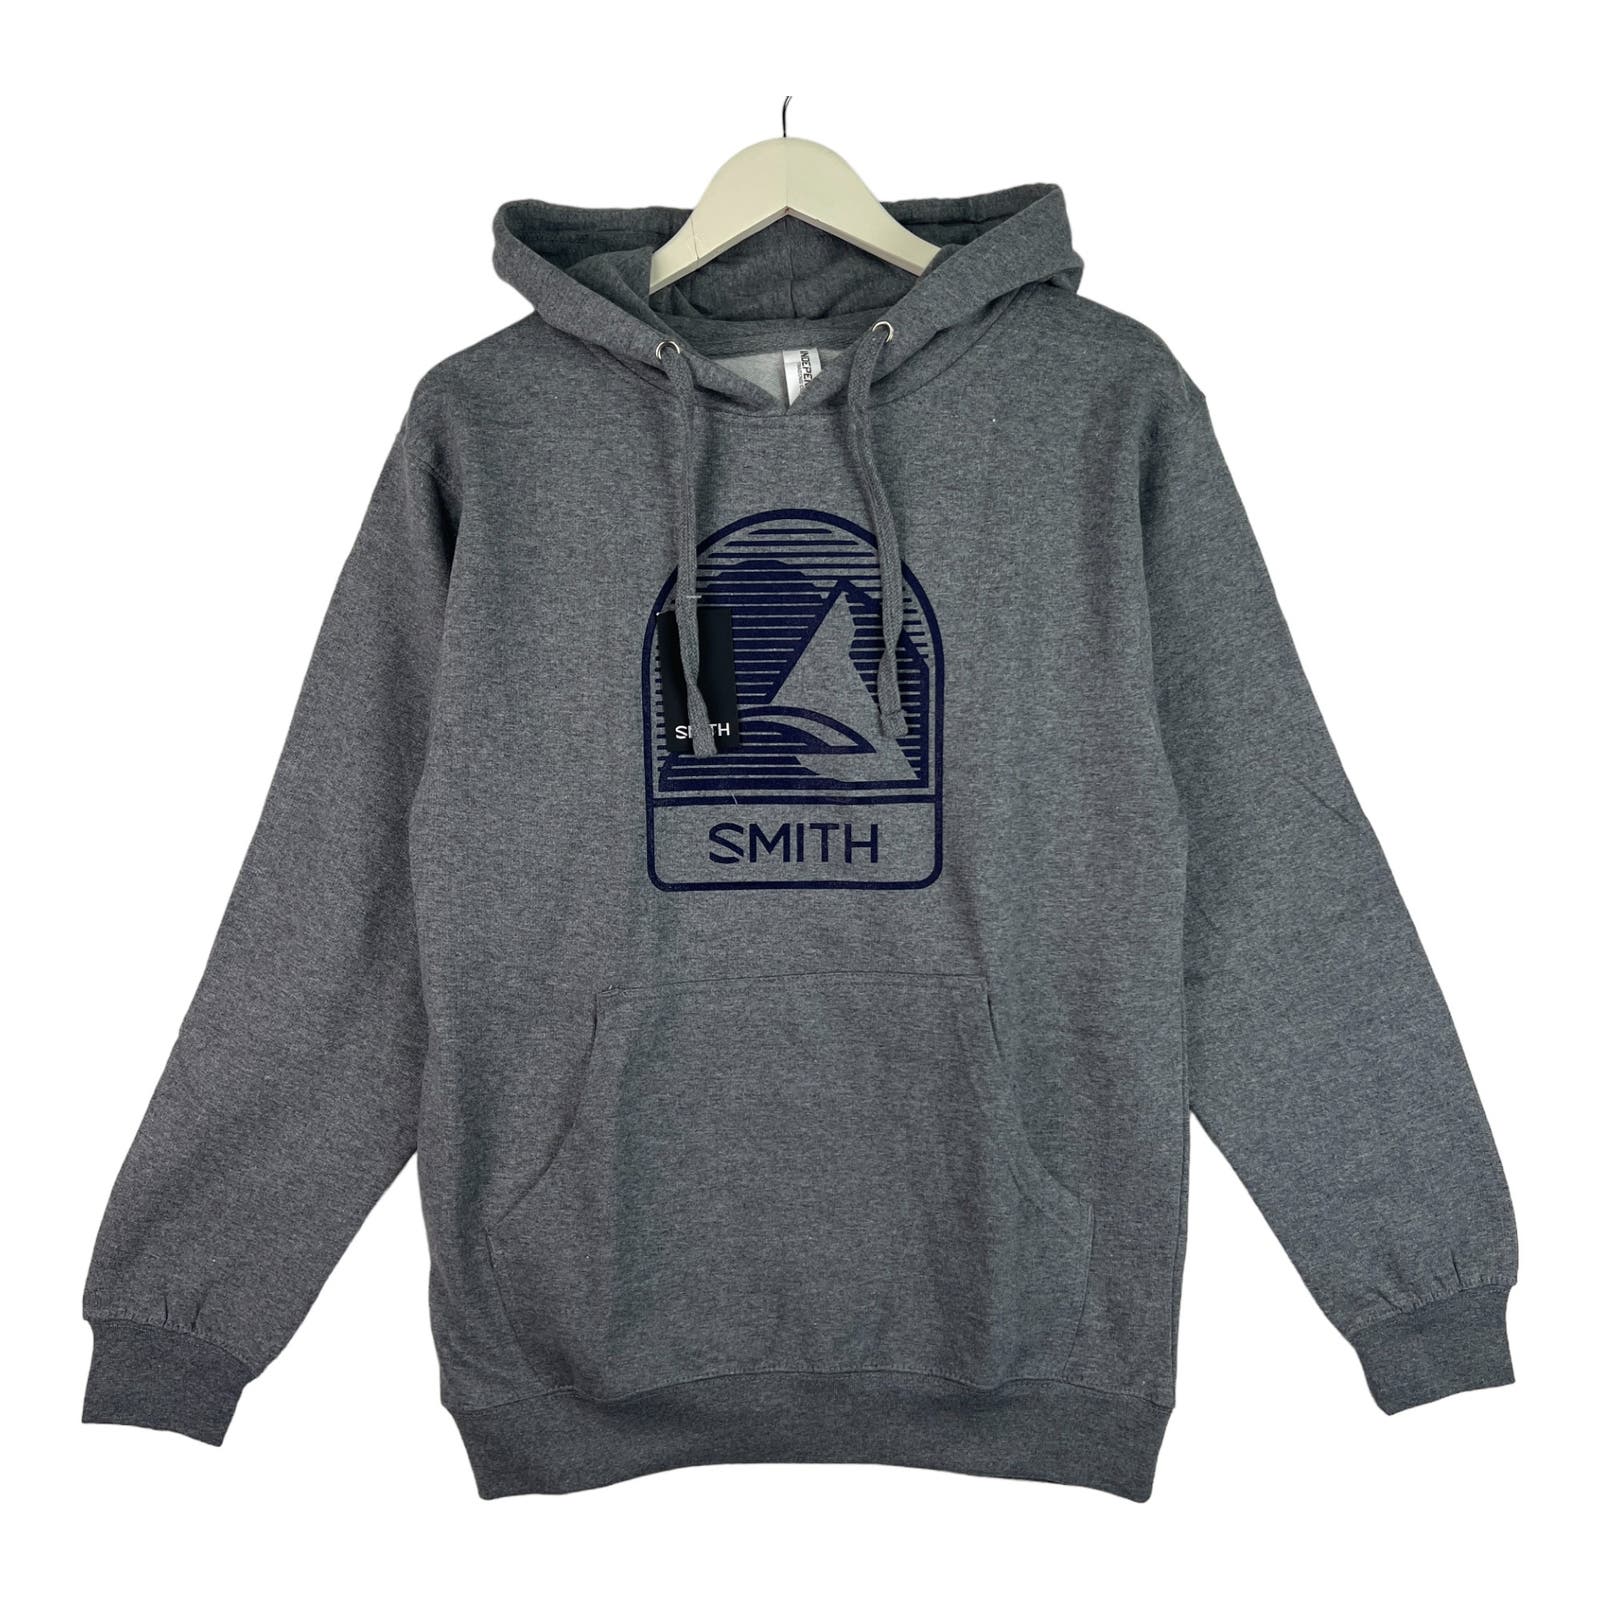 Smith Men Grey Hoodie US S Casual Sport Printed Long Sleeve